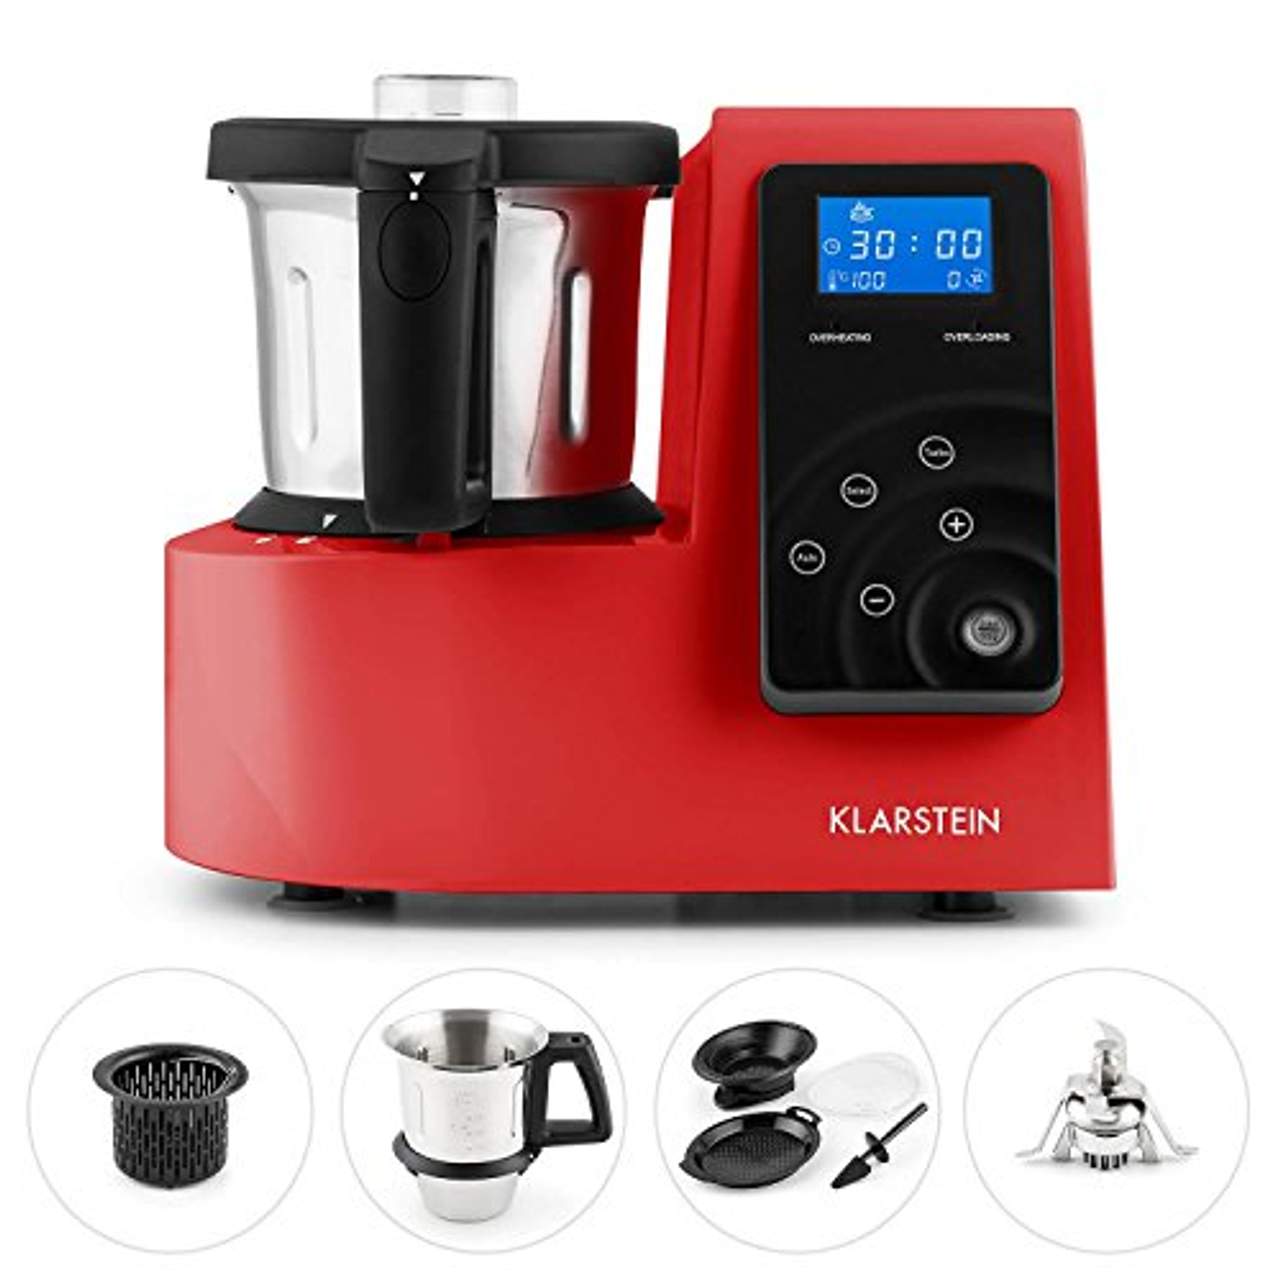 Klarstein Kitchen Hero Multifunktions-Küchenmaschine Red Edition